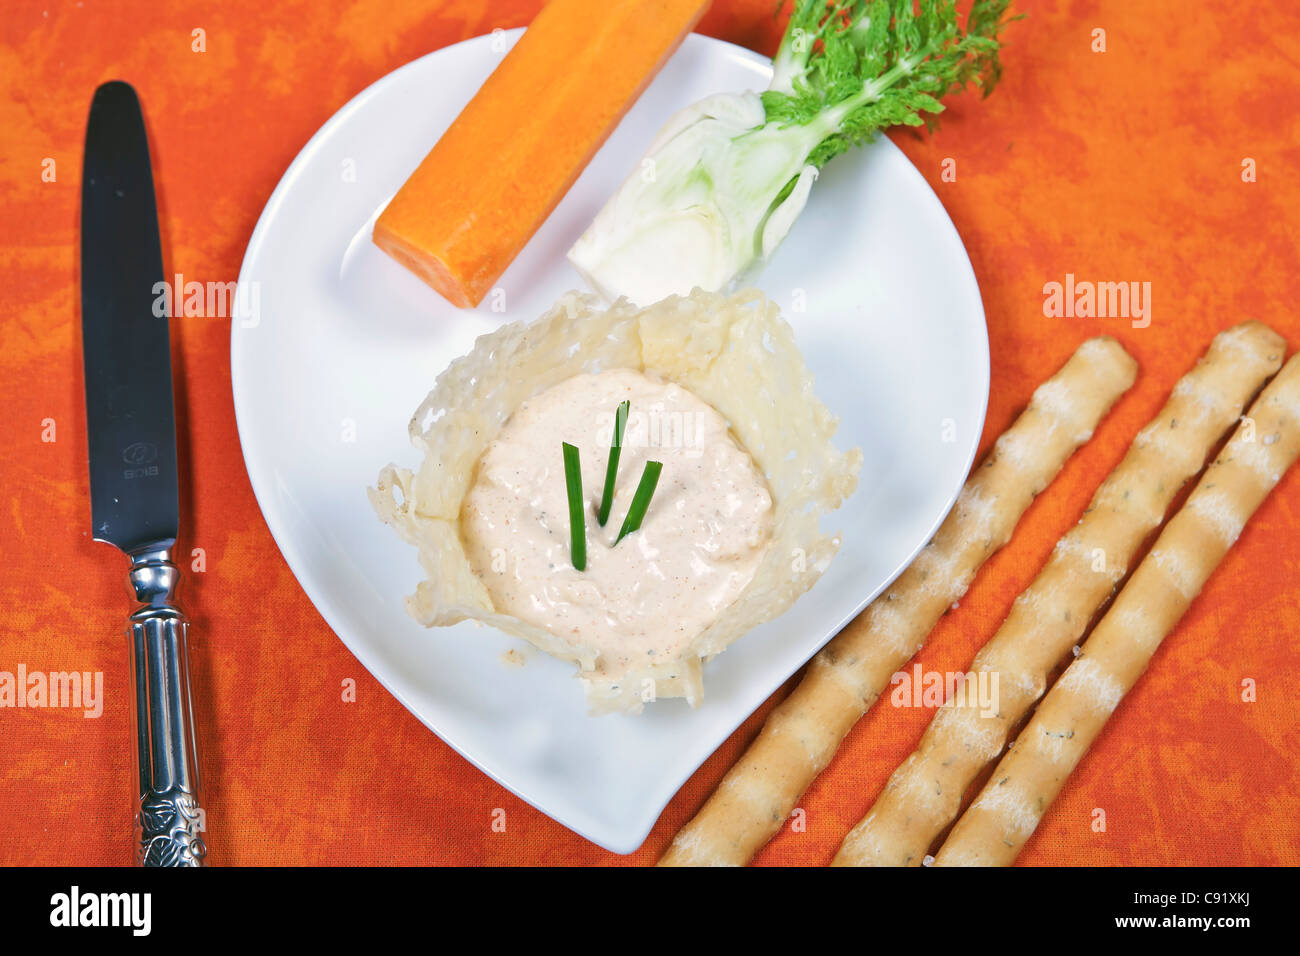 El queso crema, queso de untar, servido con vegetales crudos Foto de stock